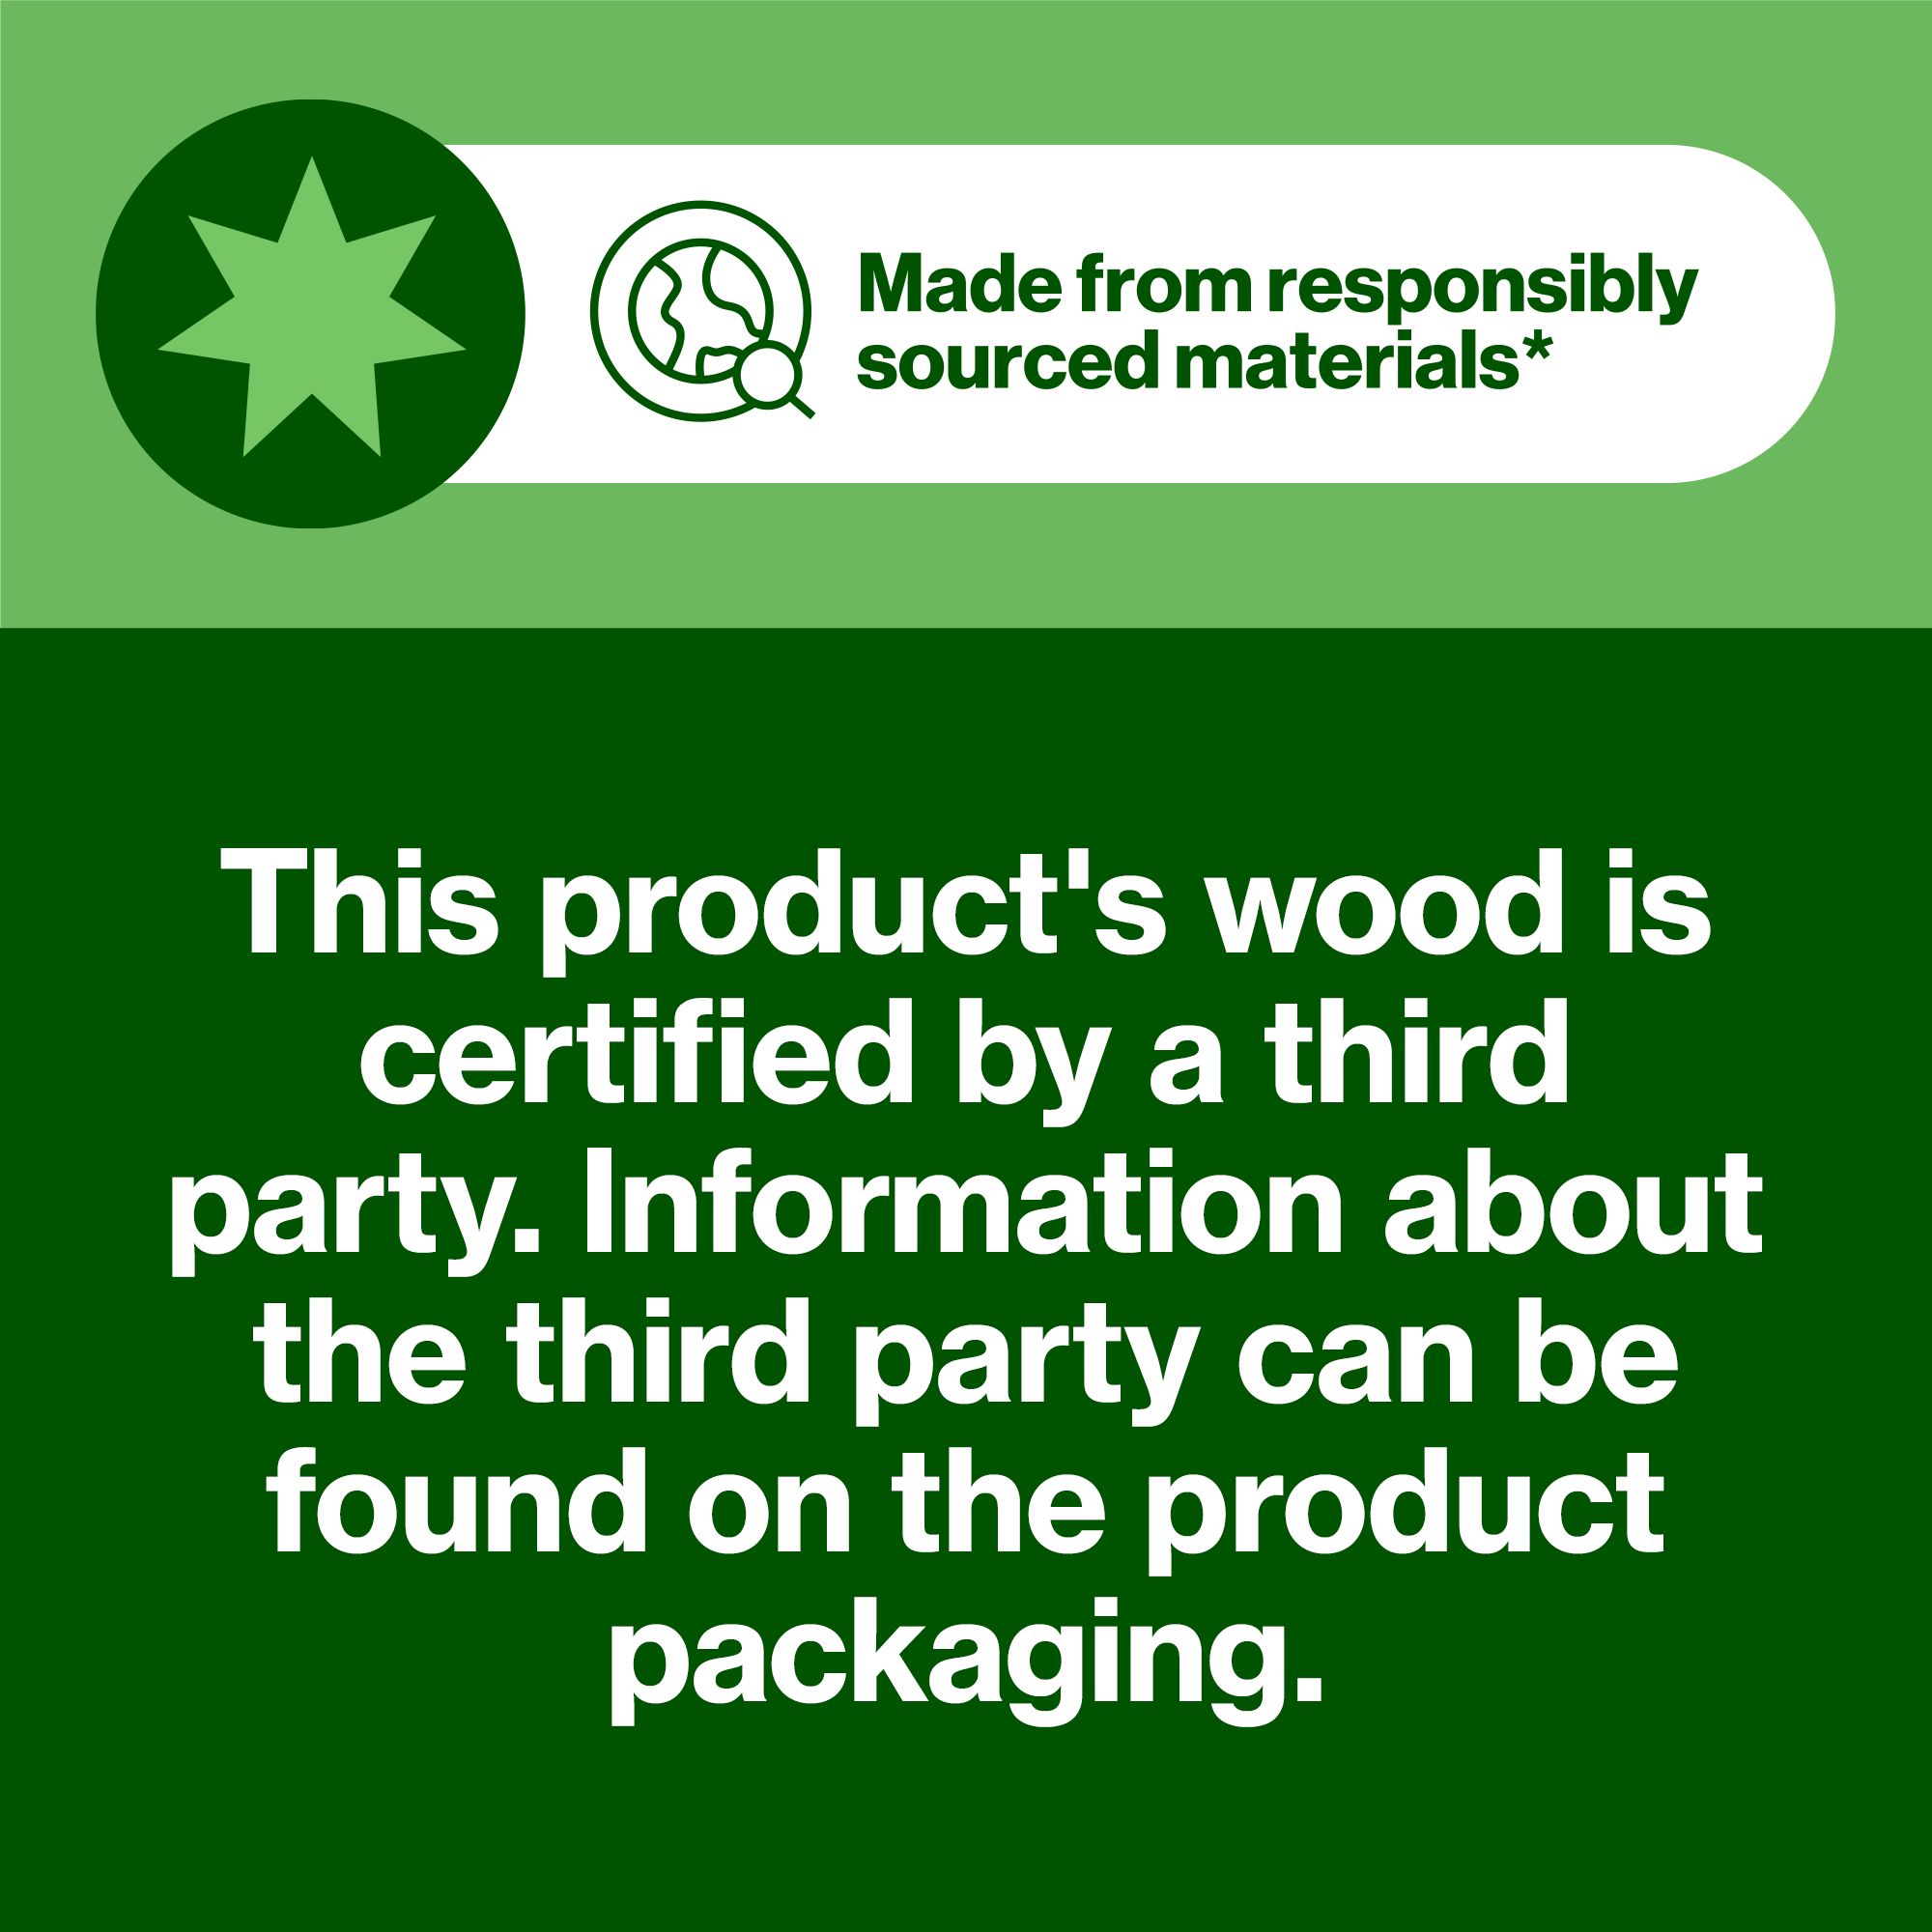 Hardwood Plywood (L)1.22m (W)0.61m (T)5mm